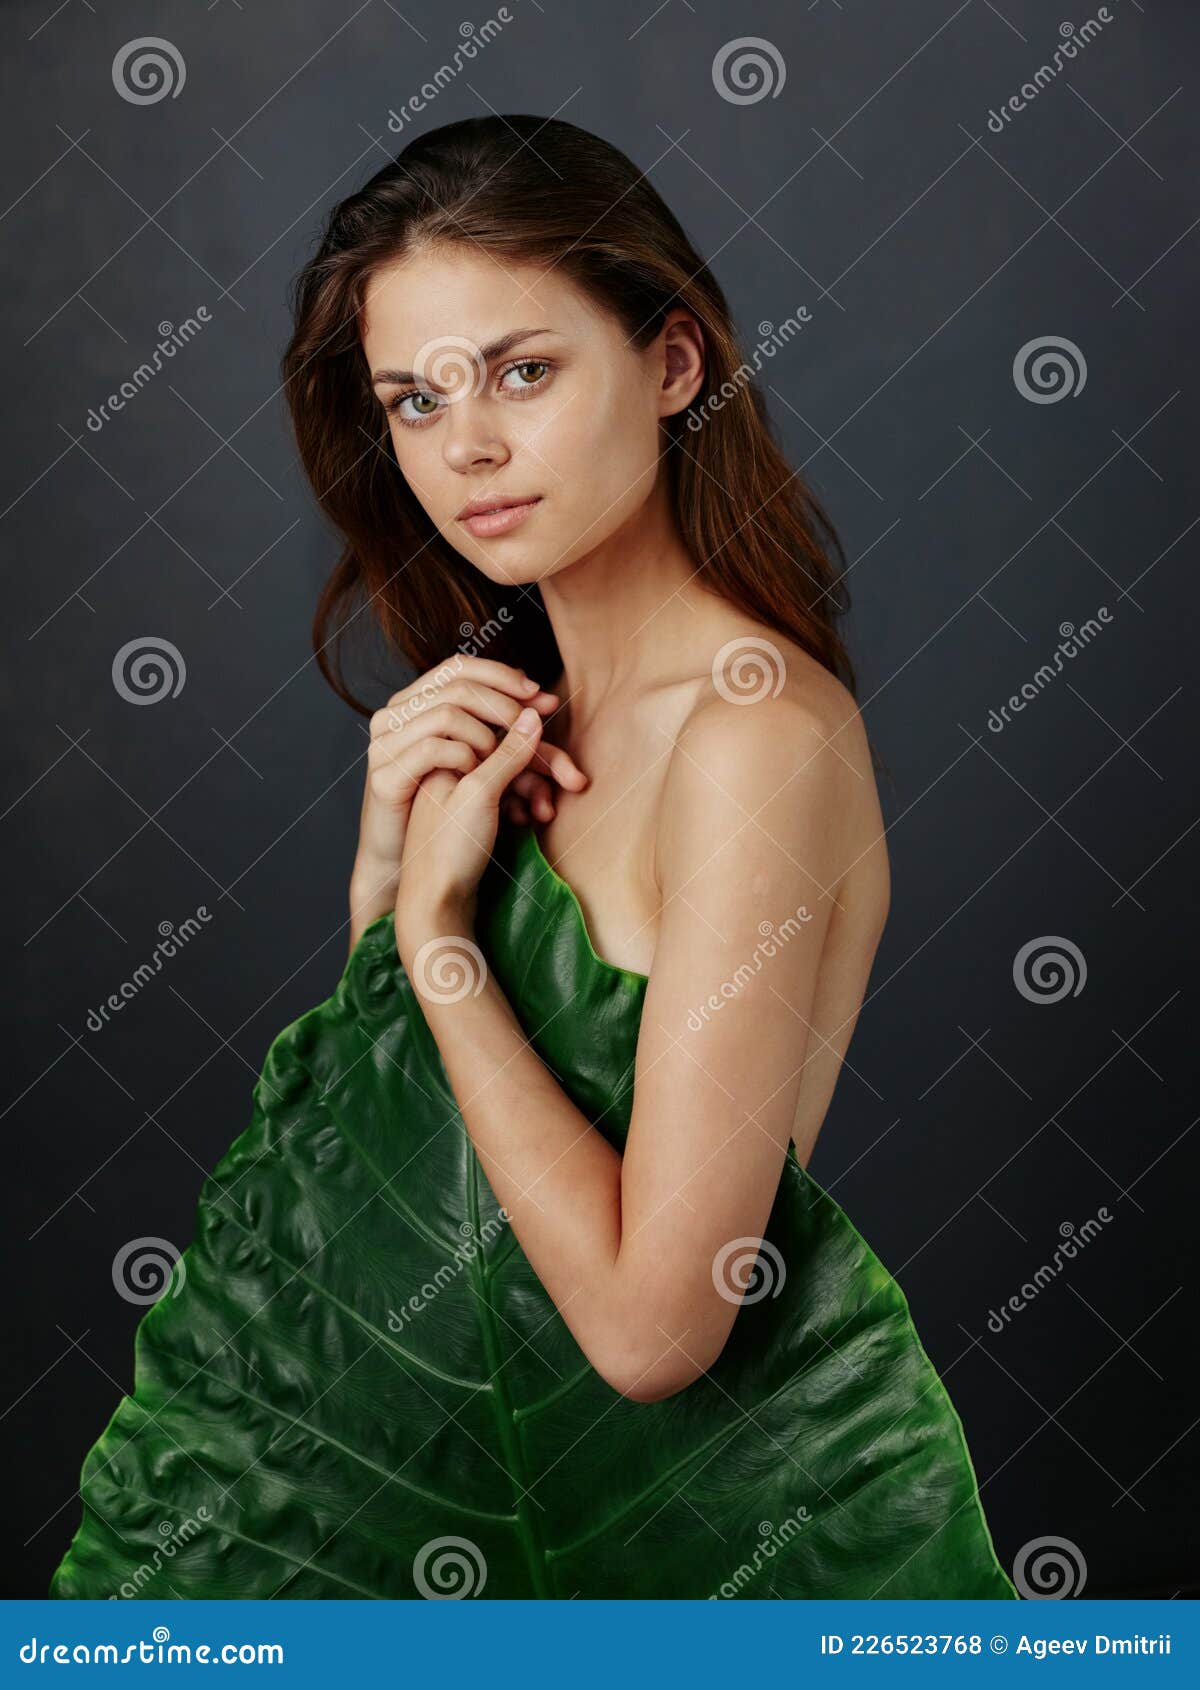 男性衬衣的美丽的年轻女人在赤裸身体 库存照片. 图片 包括有 发型, 现有量, 理想, 女孩, 人们, 魅力 - 133883674